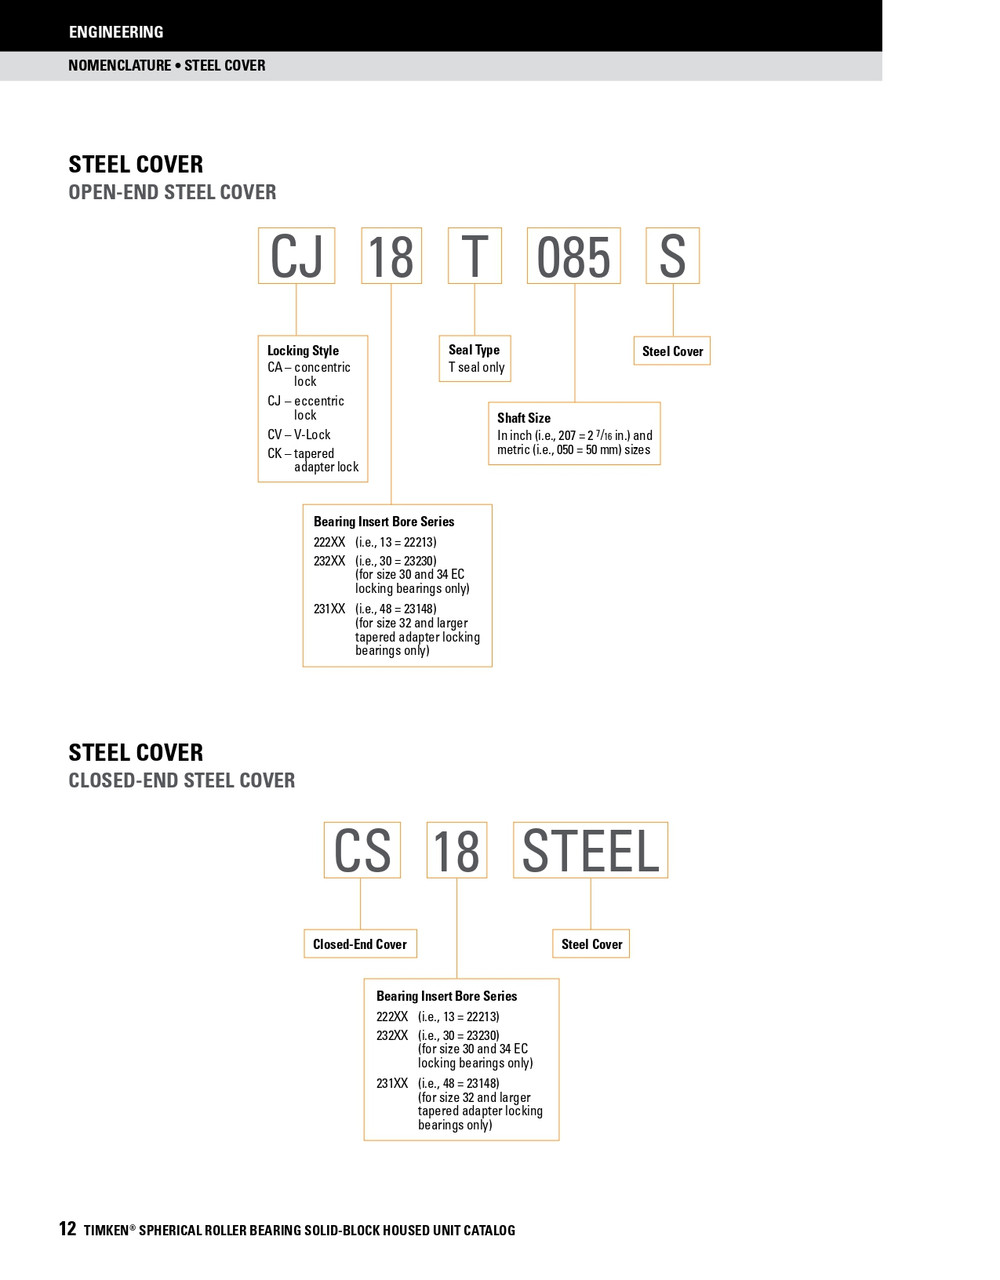 5" Timken SRB Steel Open End Cover w/Teflon Seal - TA/DV Taper Lock Bushing Type  CK28T500S